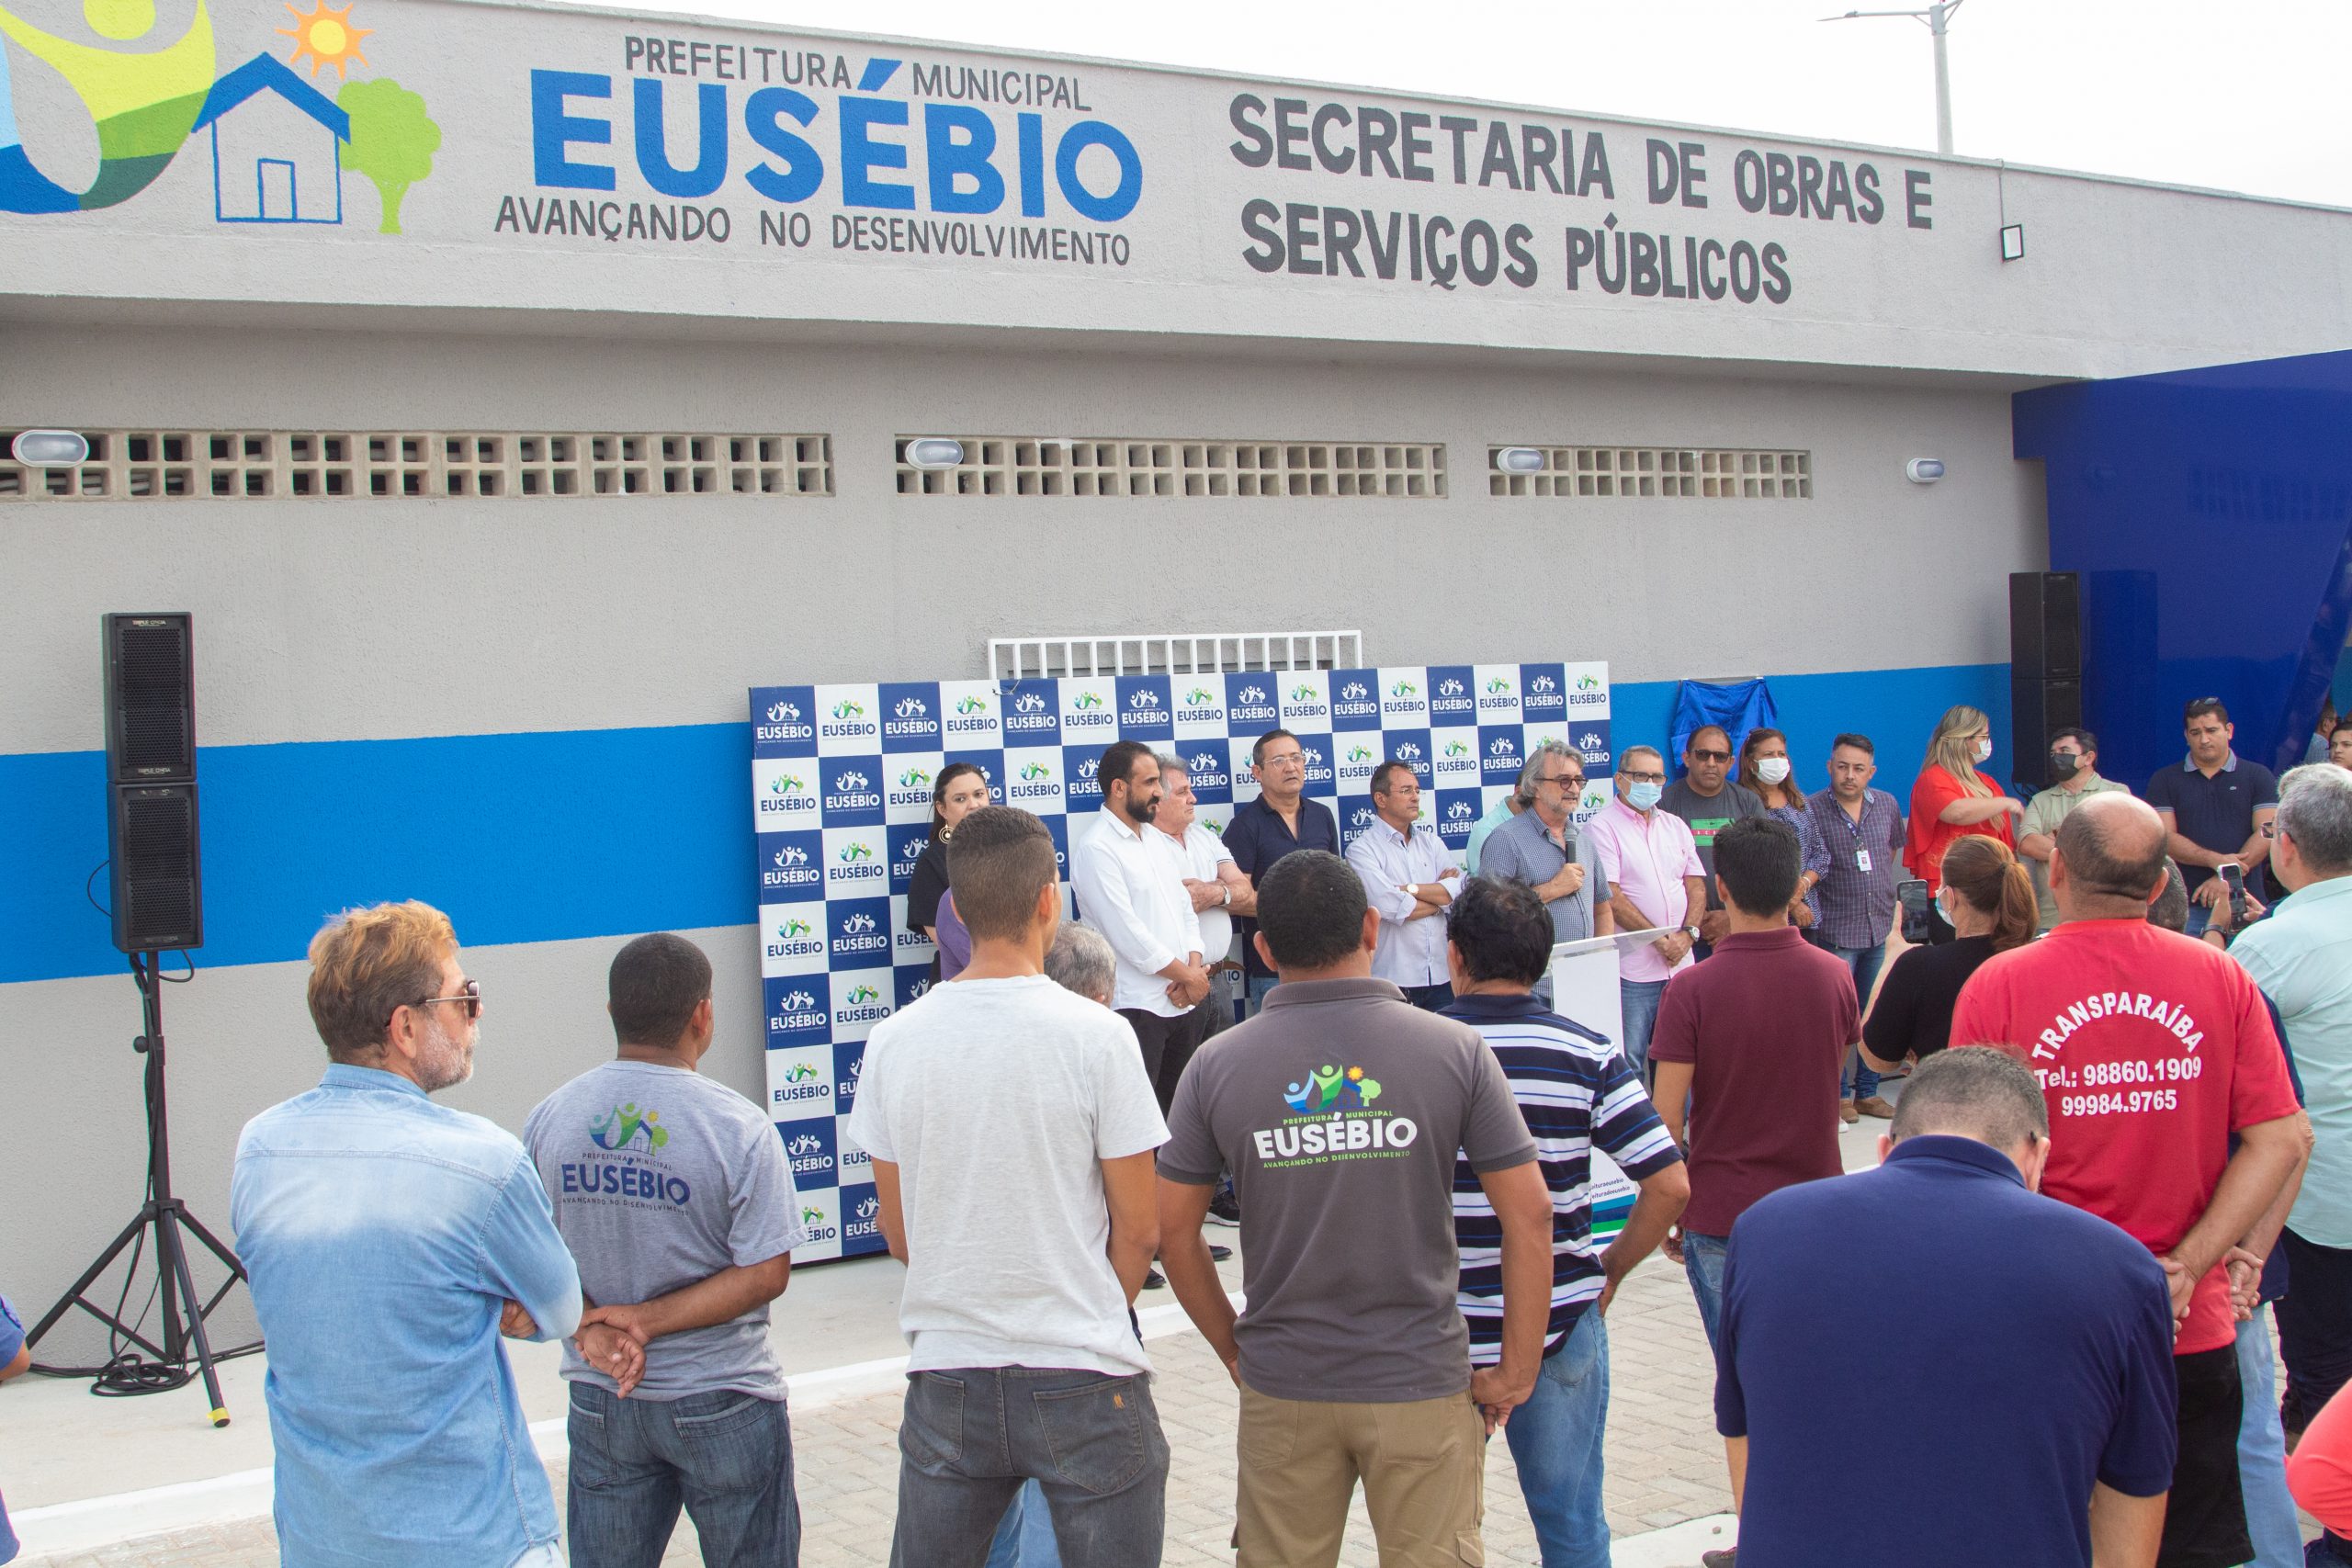 Prefeitura de Eusébio inaugura nova Secretaria de Obras e Serviços Públicos